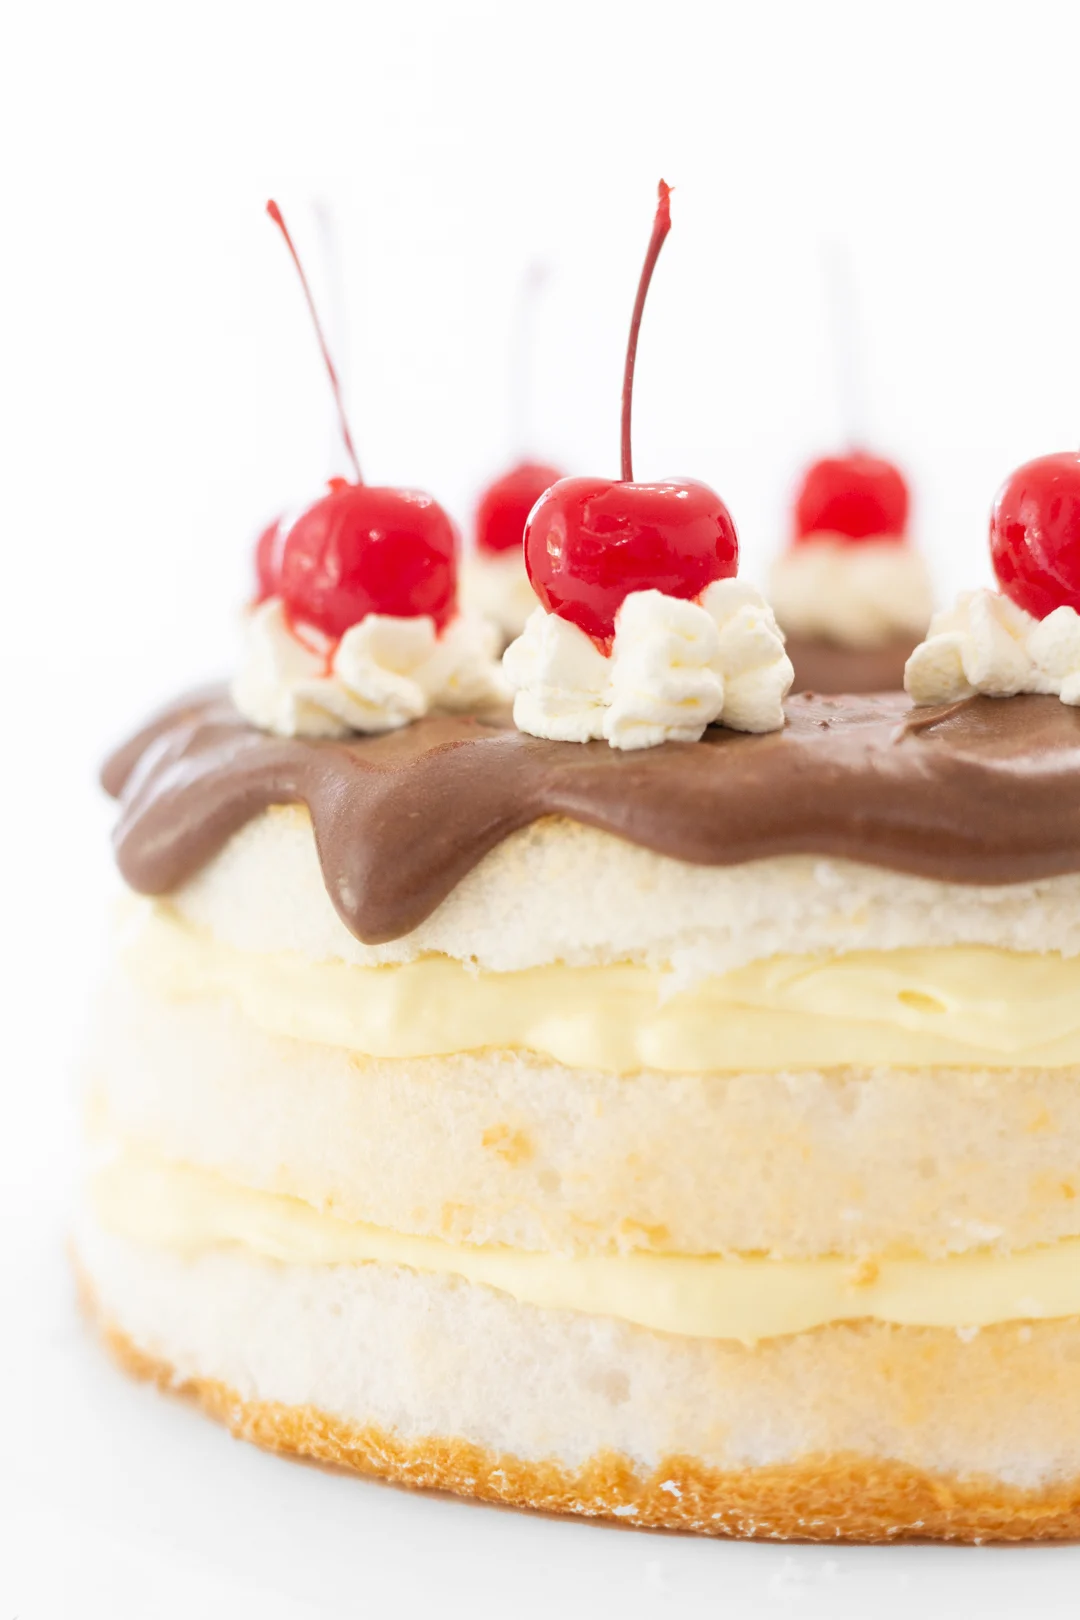 Giant maraschino cherries o top of layered boston cream cake.